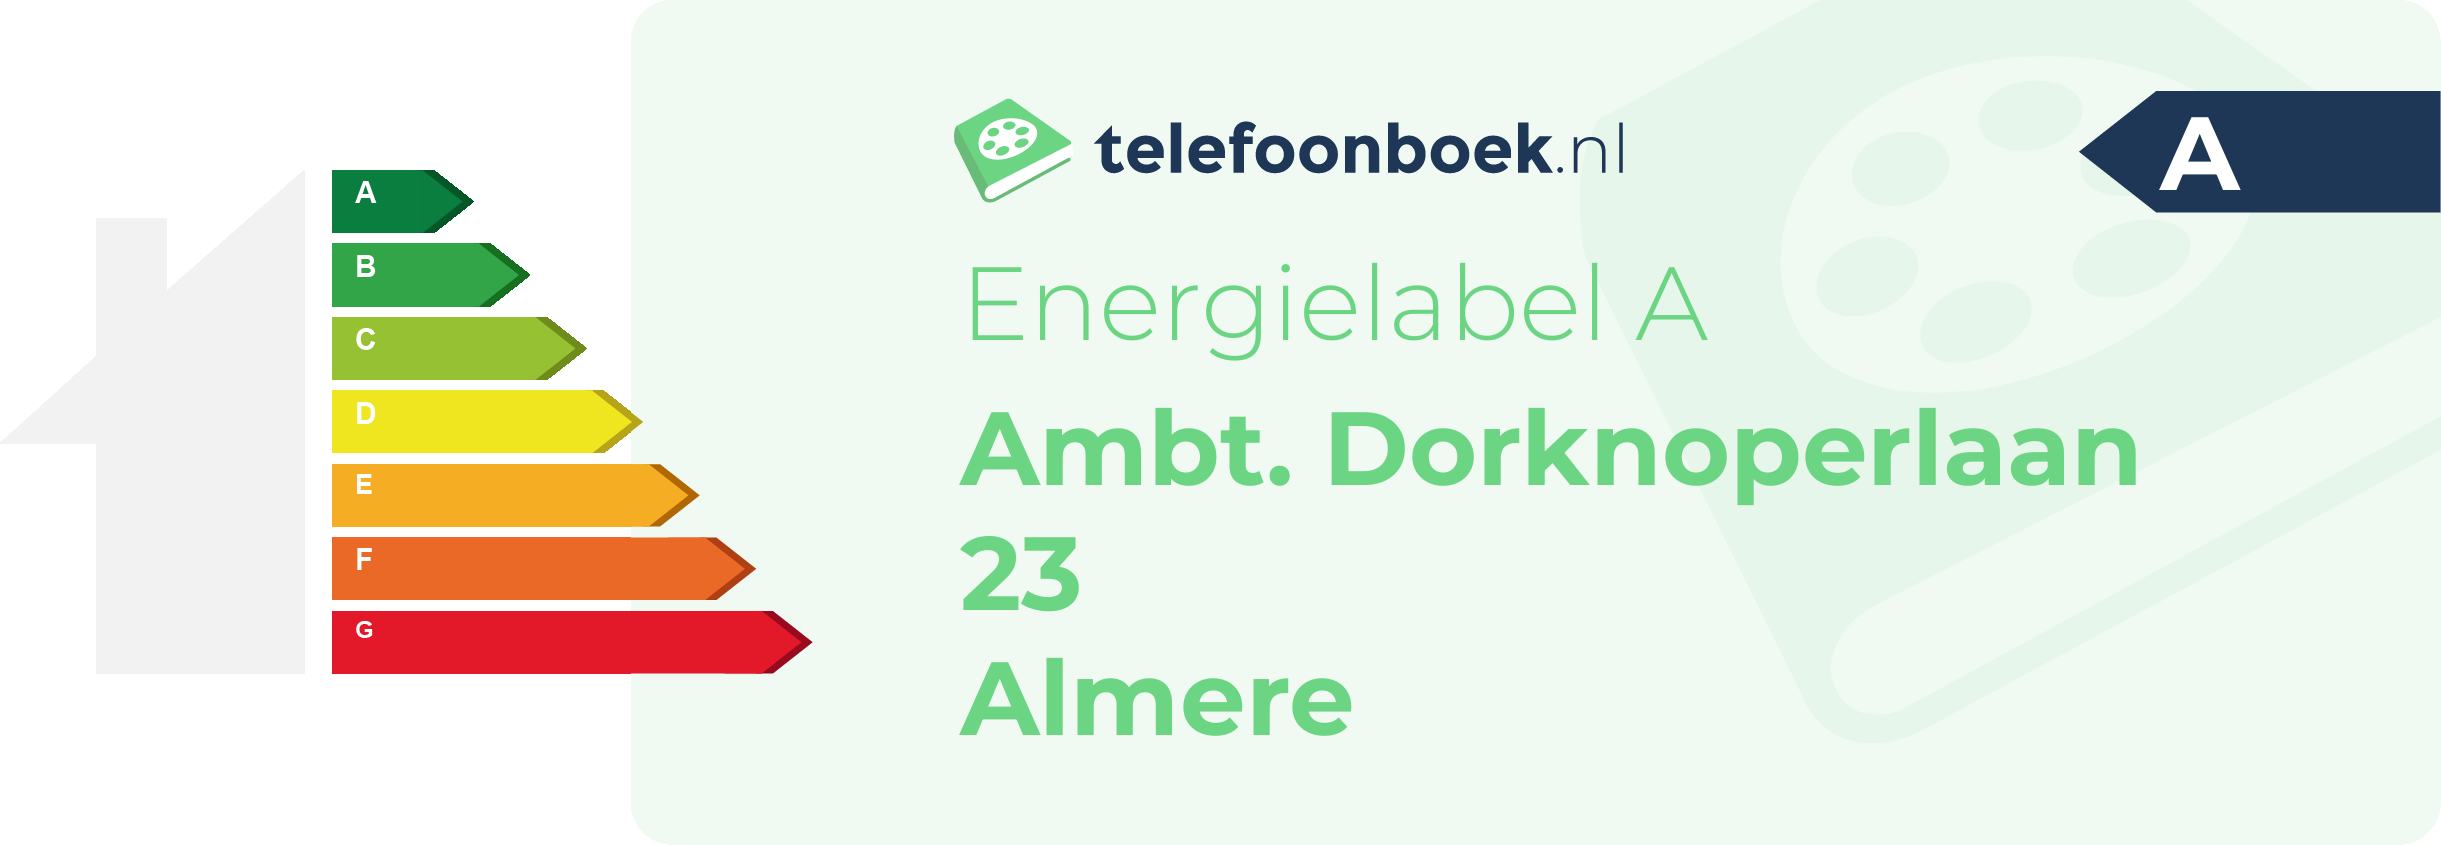 Energielabel Ambt. Dorknoperlaan 23 Almere